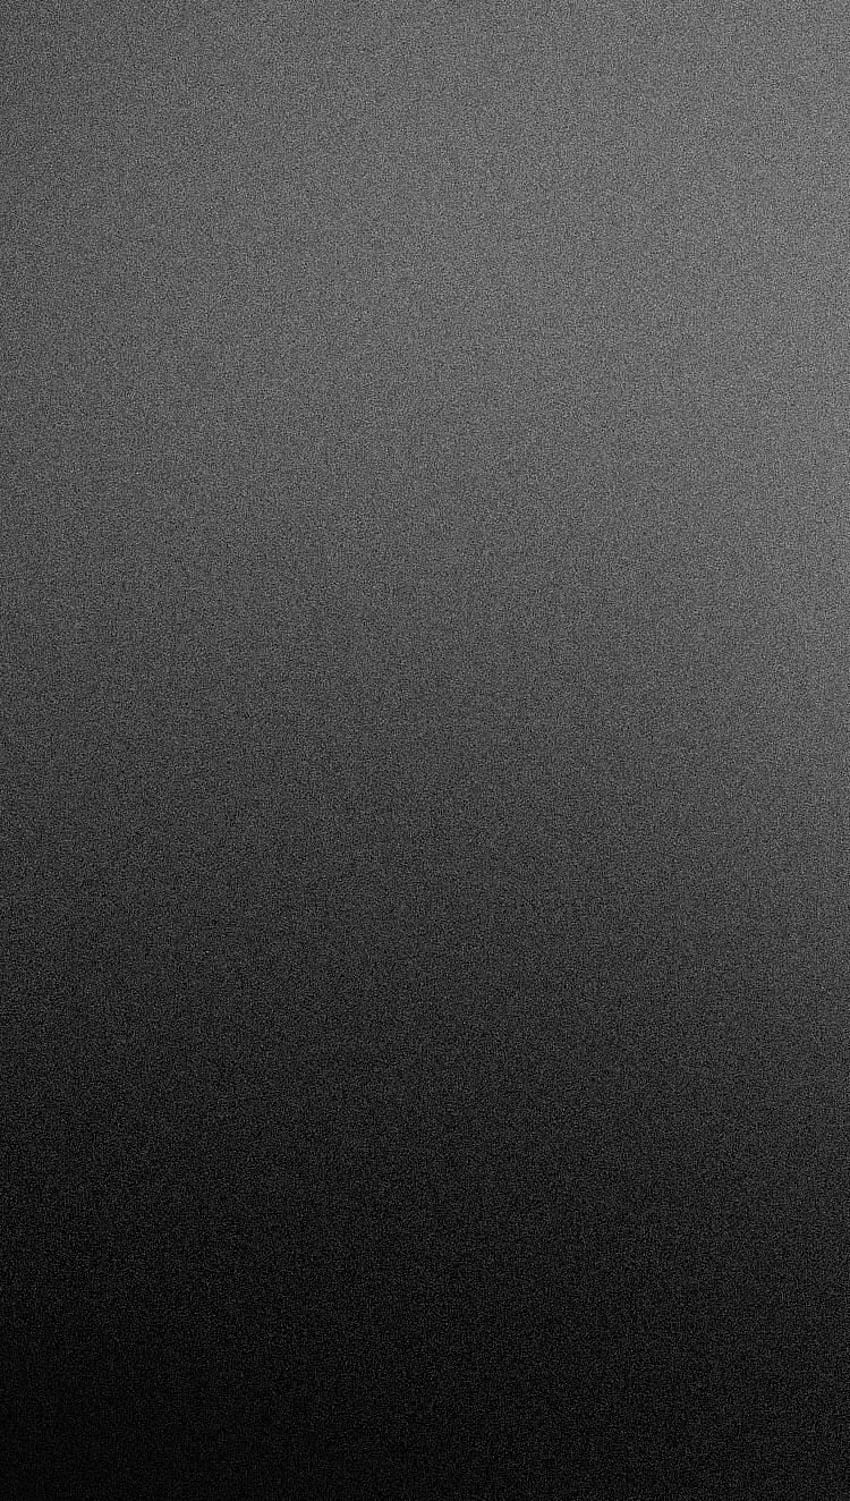 Dégradé givré noir mat. Fond noir , Téléphone noir , Iphone noir, Gris mat Fond d'écran de téléphone HD